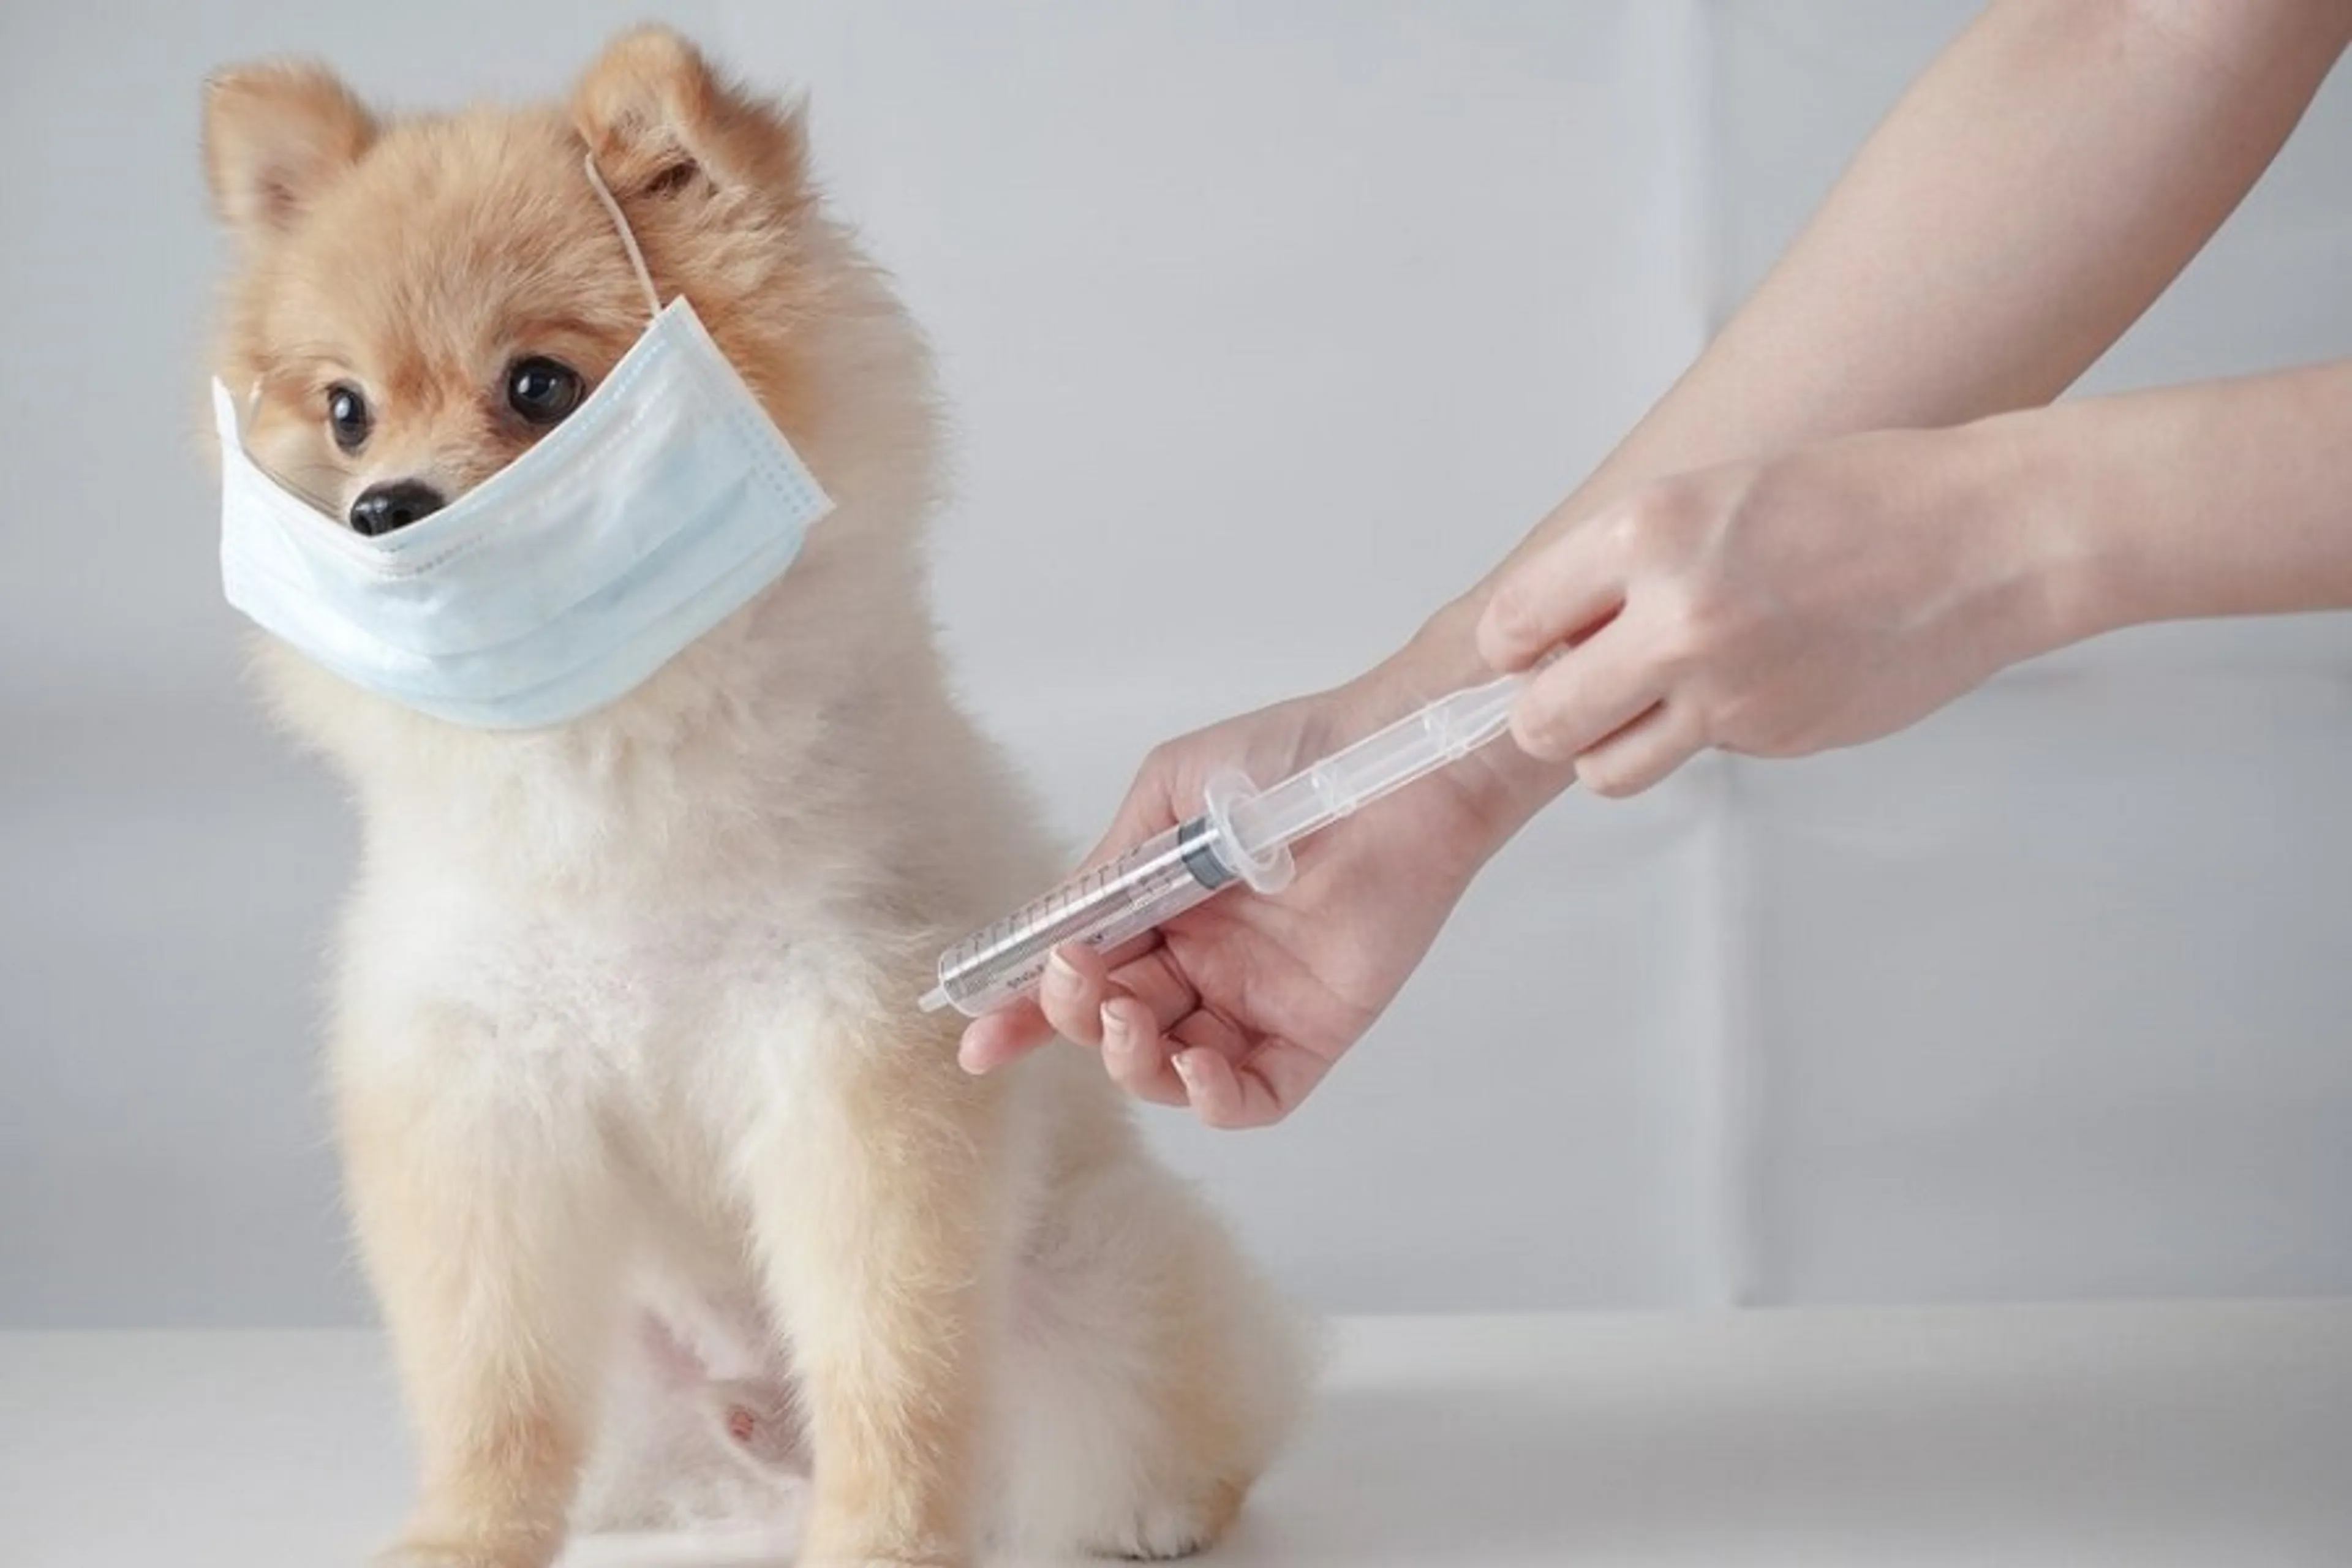 Thuốc và vaccine cho thú cưng - Những điều bạn cần biết